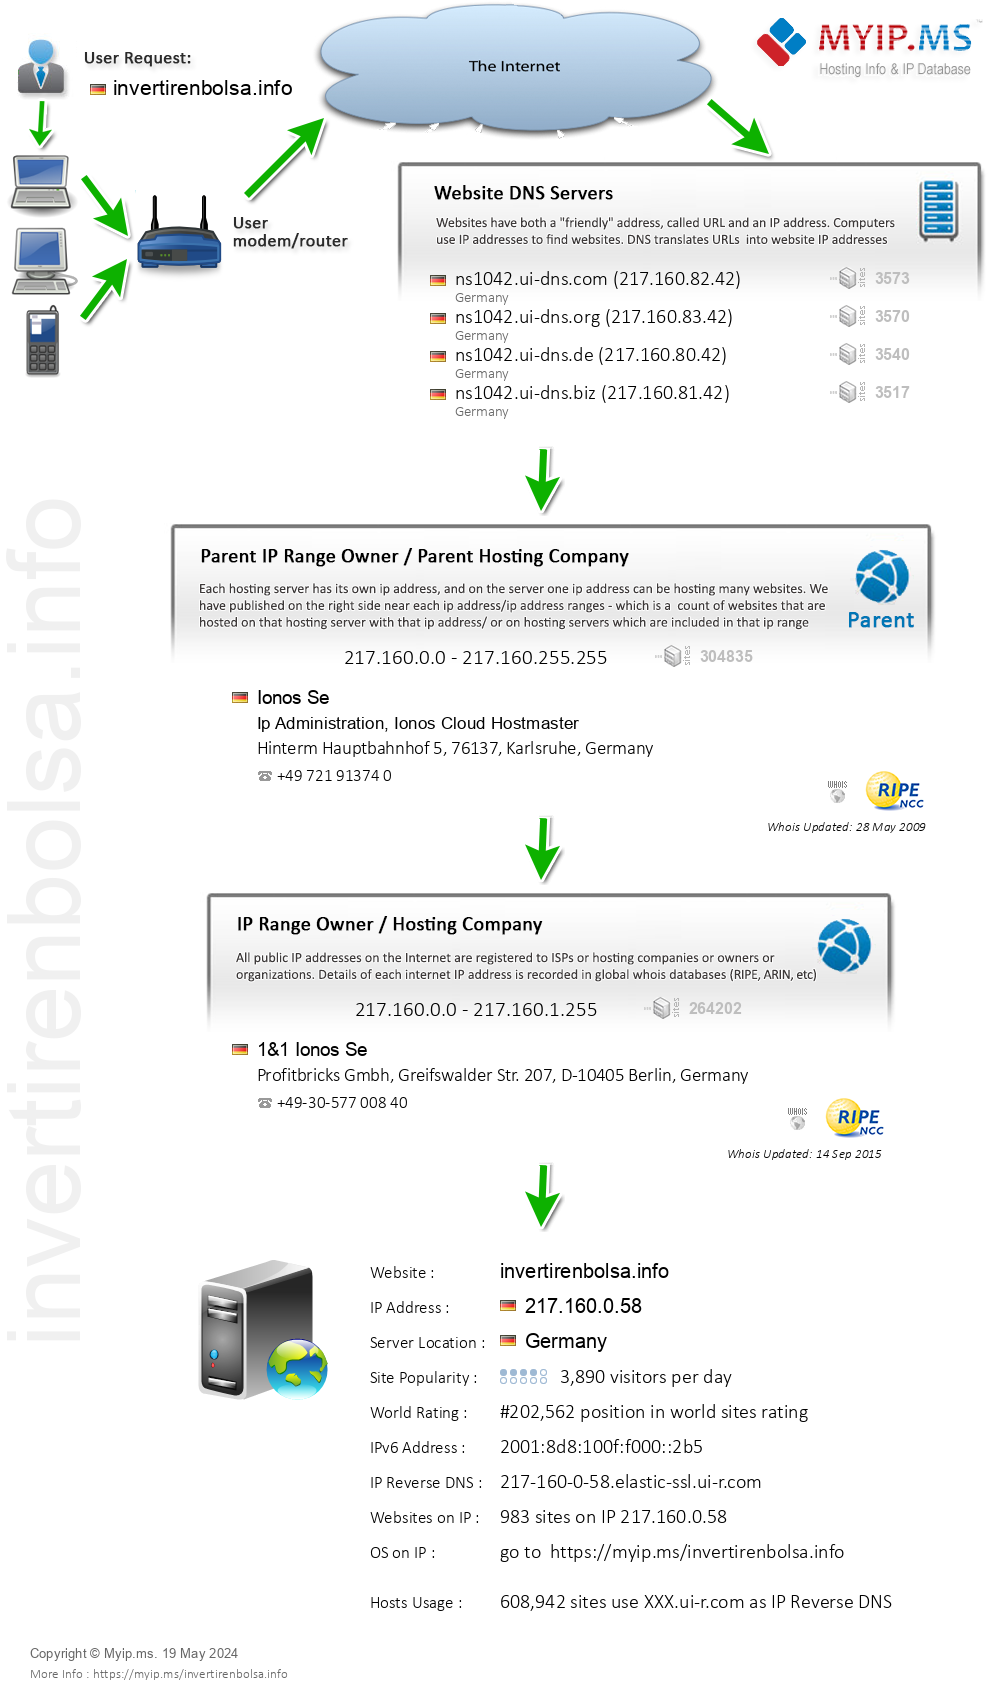 Invertirenbolsa.info - Website Hosting Visual IP Diagram